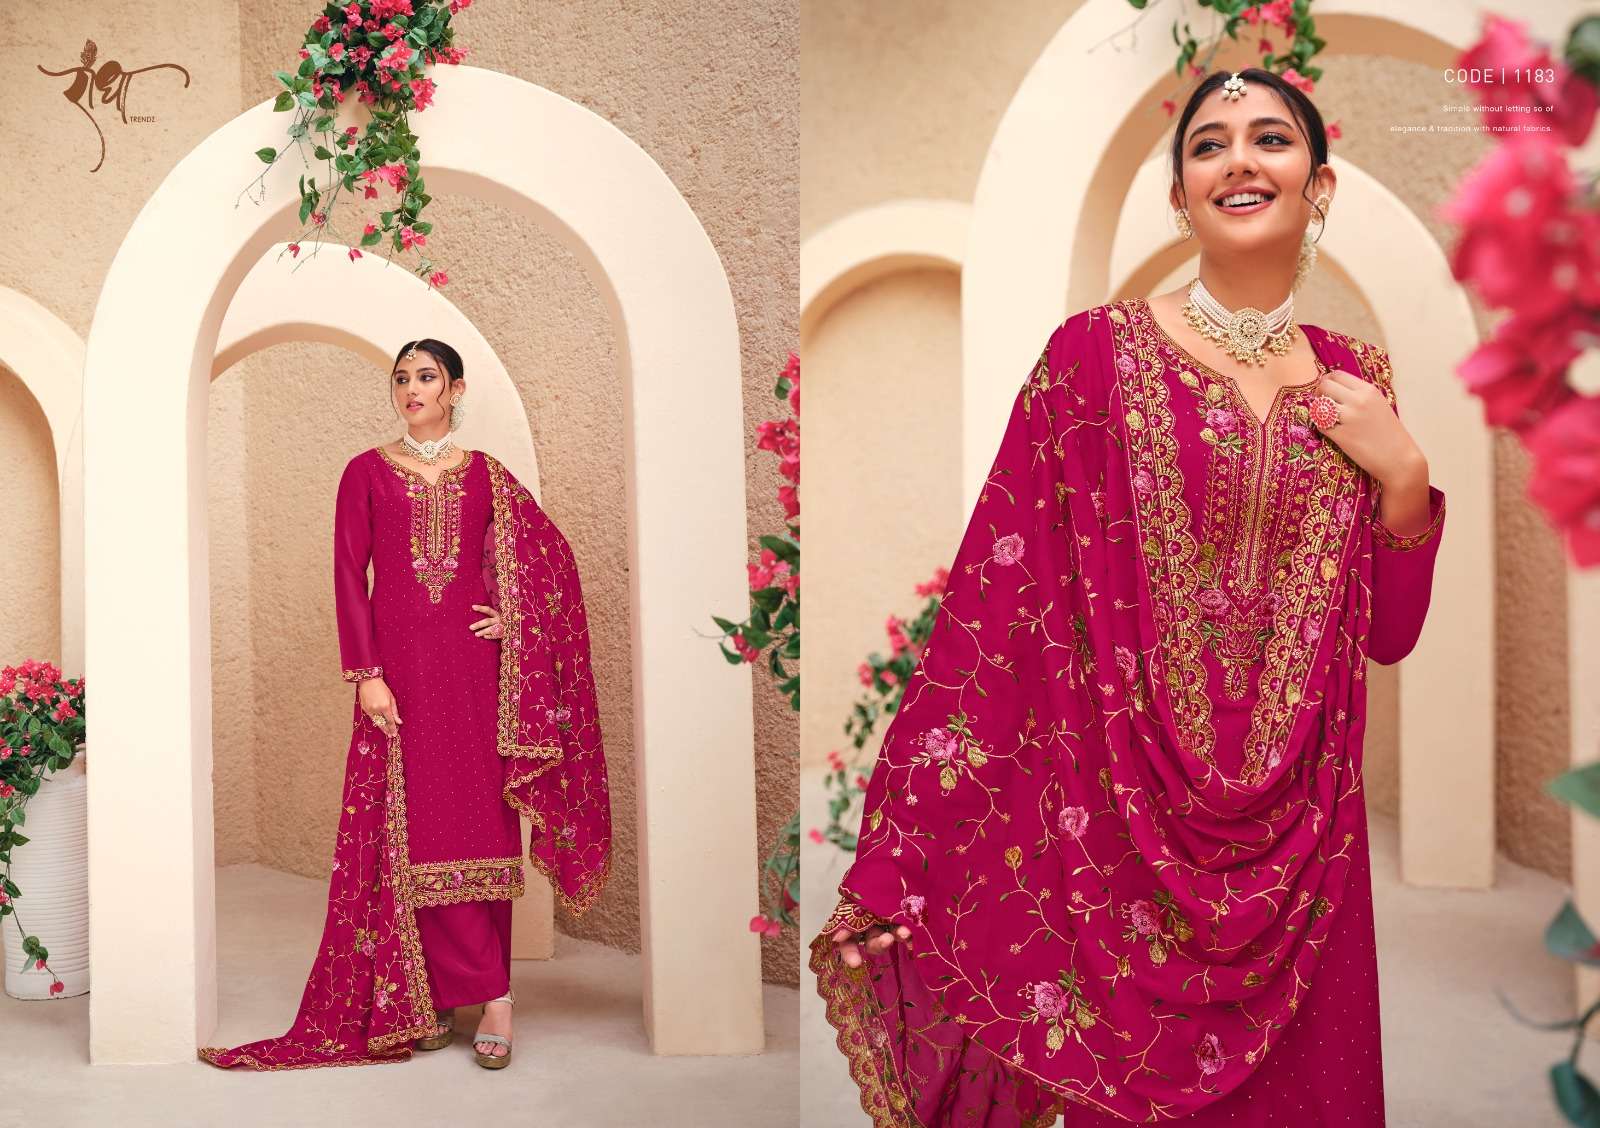 radha trendz suhagan 1181-1184 series latest designer salwar kameez wholesaler surat gujarat